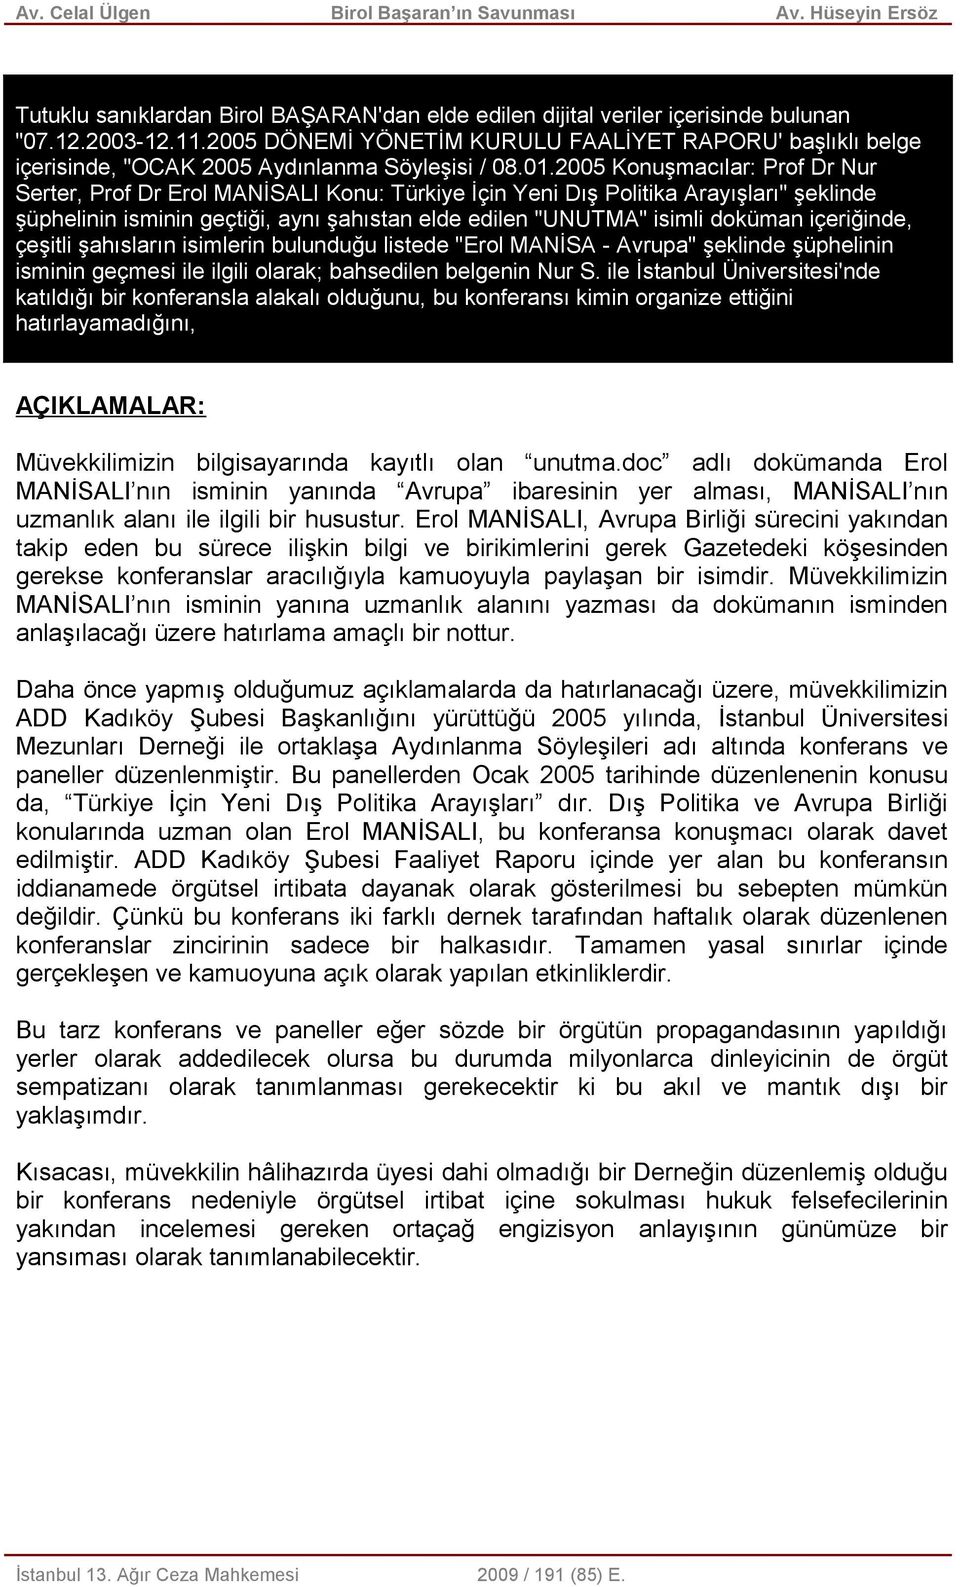 2005 Konuşmacılar: Prof Dr Nur Serter, Prof Dr Erol MANİSALI Konu: Türkiye İçin Yeni Dış Politika Arayışları" şeklinde şüphelinin isminin geçtiği, aynı şahıstan elde edilen "UNUTMA" isimli doküman